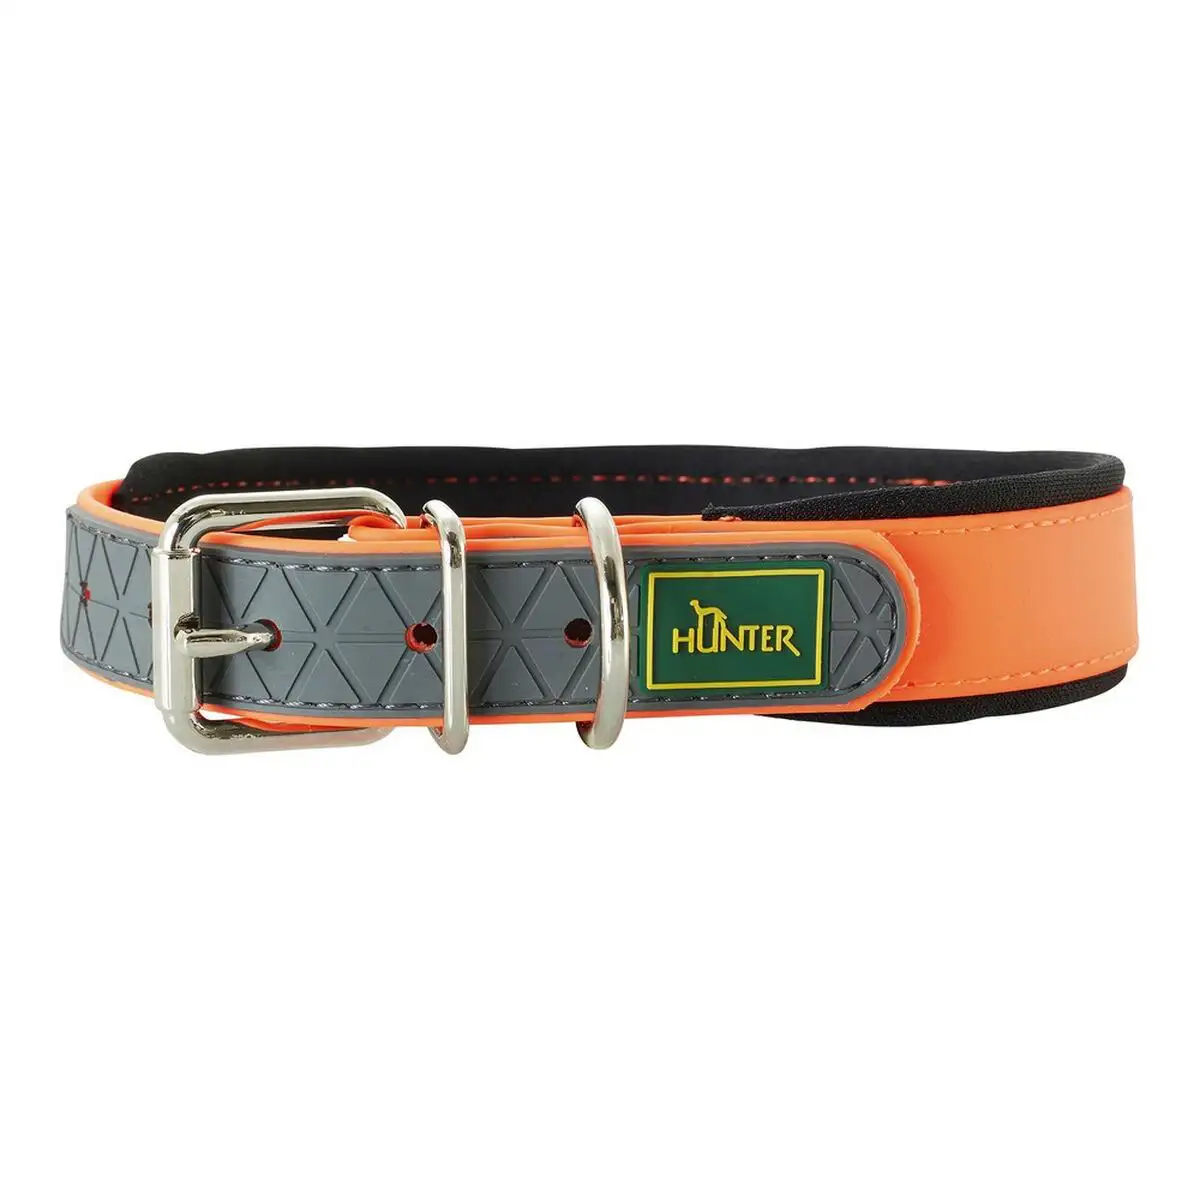 Collier pour chien hunter convenience comfort orange 42 50 cm _3125. DIAYTAR SENEGAL - Là où Chaque Clic Compte. Parcourez notre boutique en ligne et laissez-vous guider vers des trouvailles uniques qui enrichiront votre quotidien.